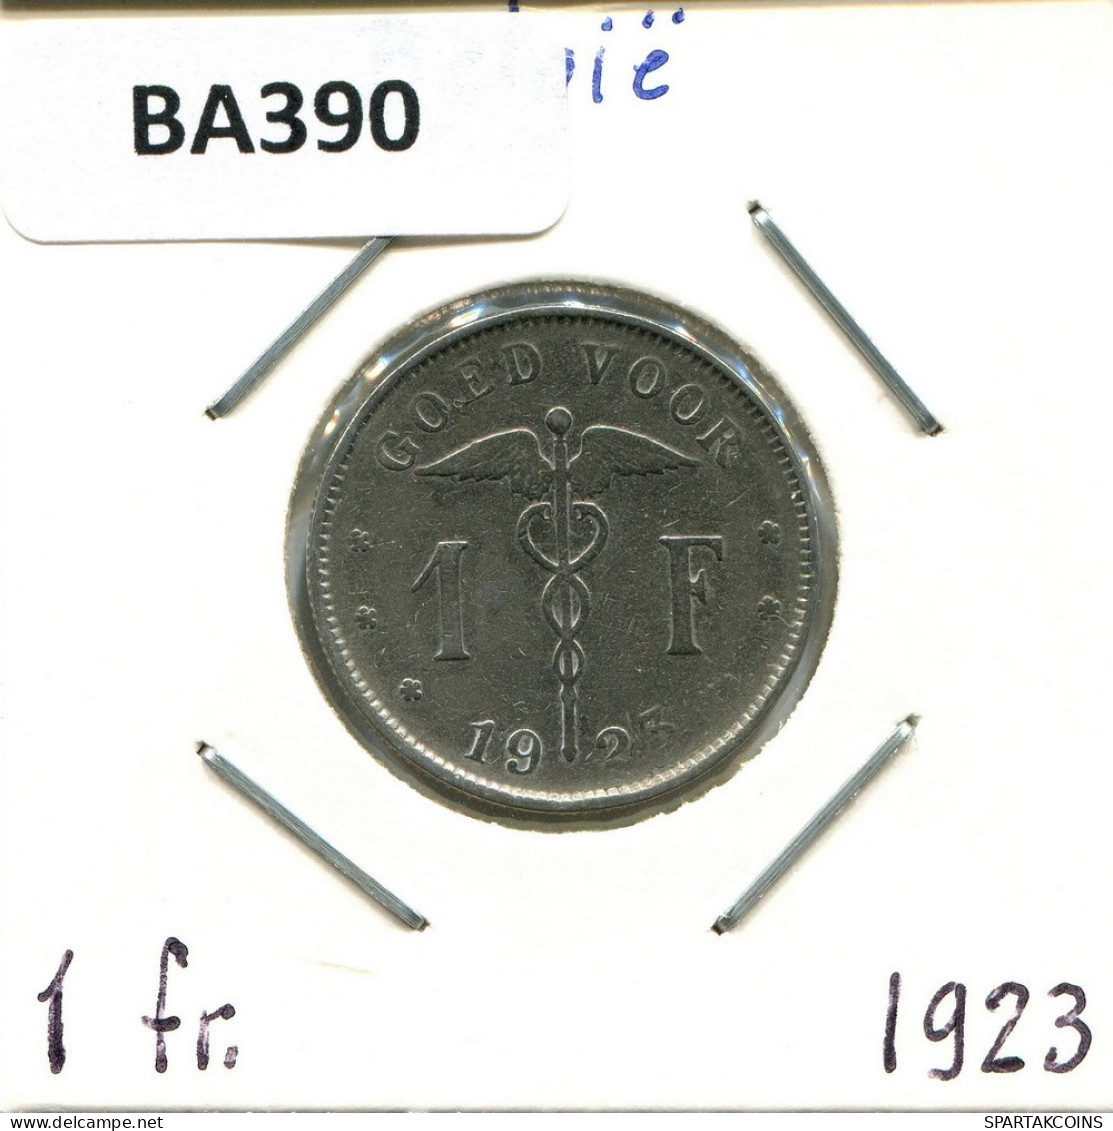 1 FRANC 1923 BELGIUM Coin DUTCH Text #BA390.U.A - 1 Franco